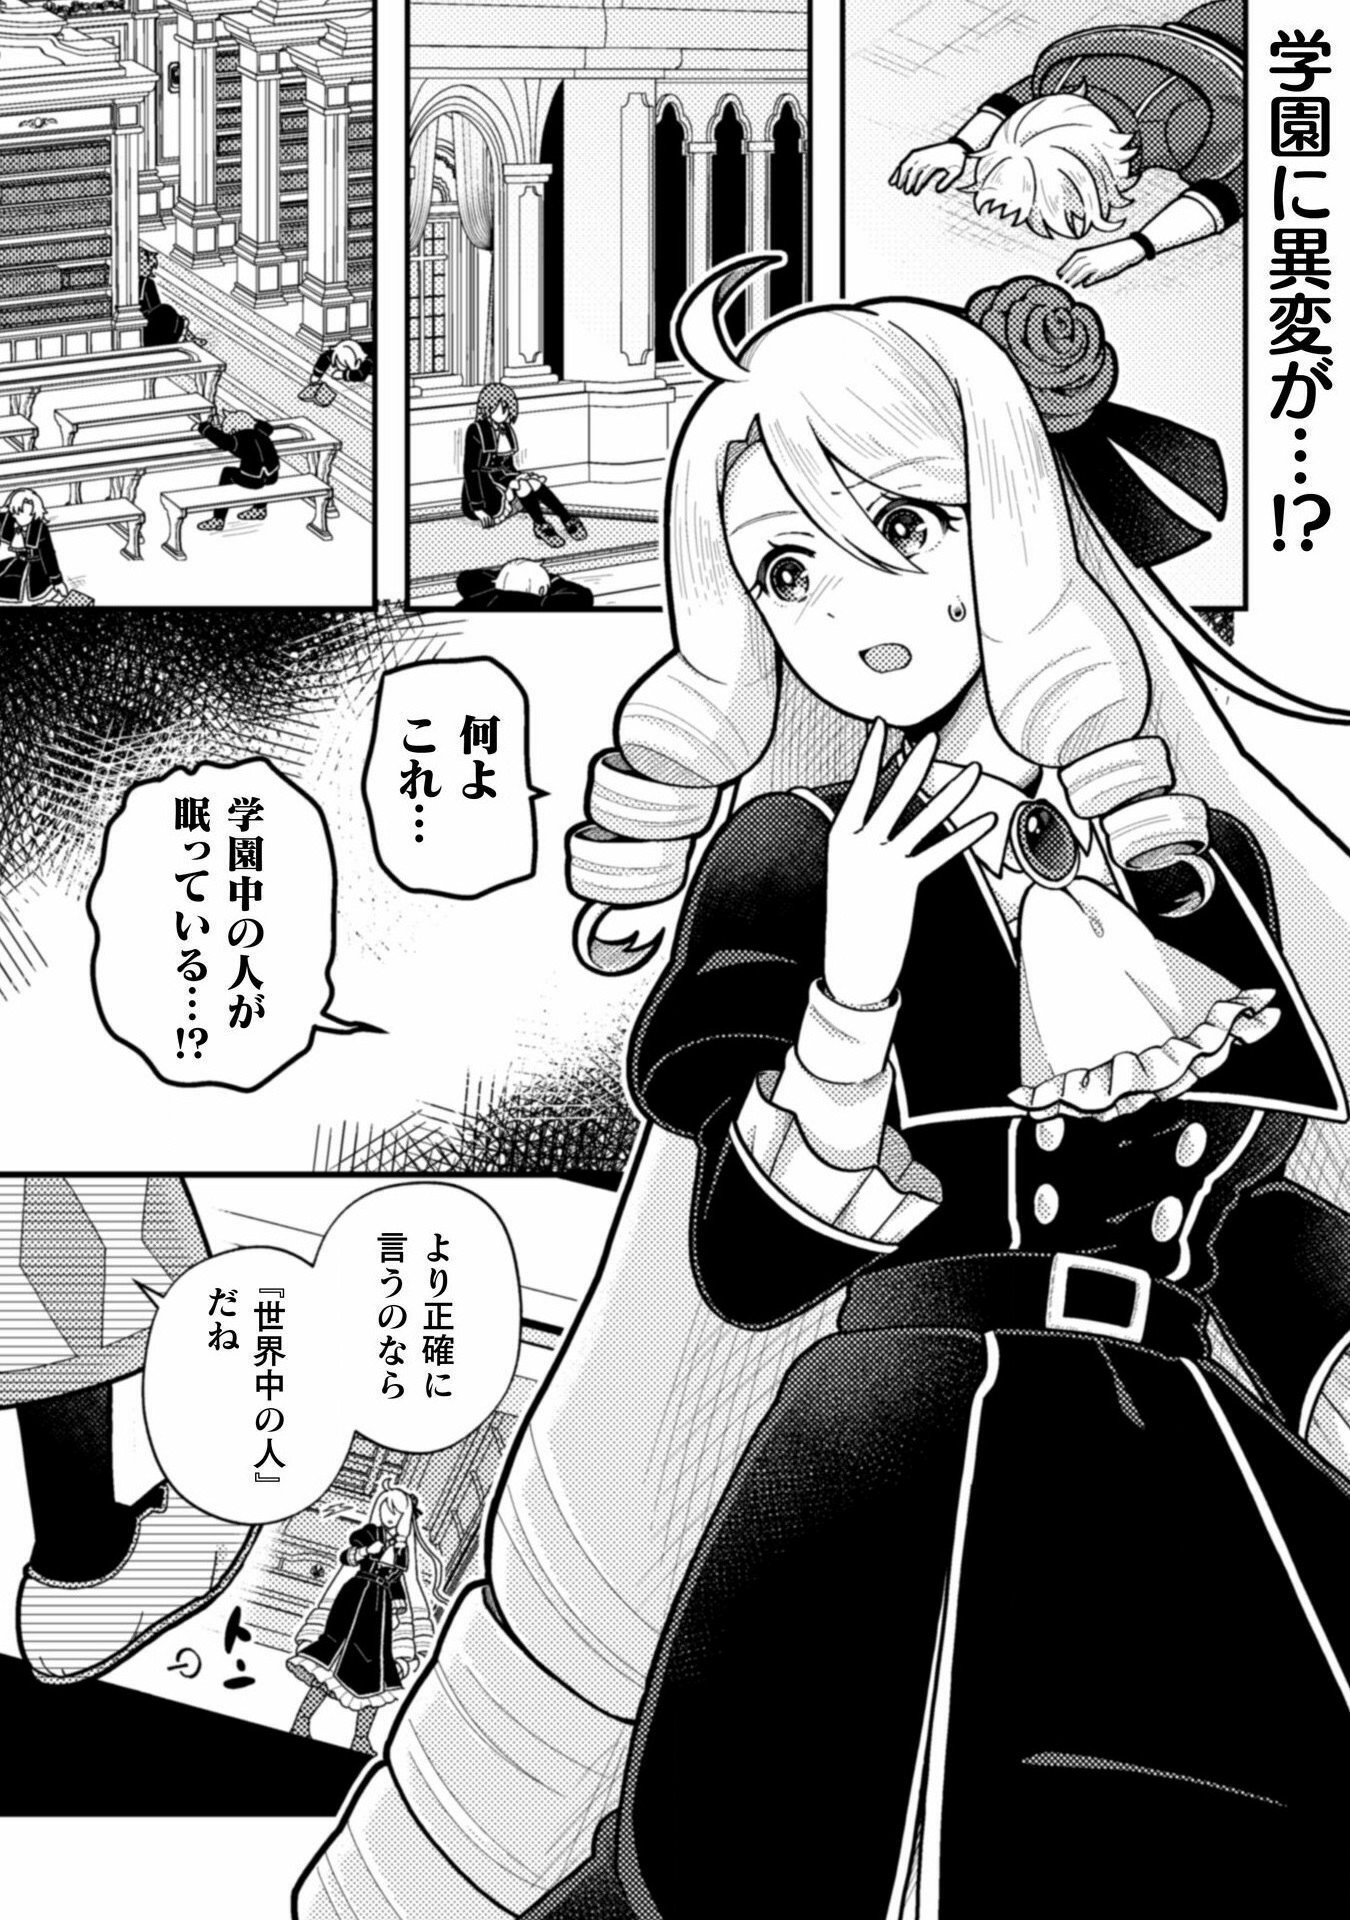 Otome Game no Akuyaku Reijou ni Tensei shitakedo Follower ga Fukyoushiteta Chisiki shikanai - Chapter 22 - Page 3